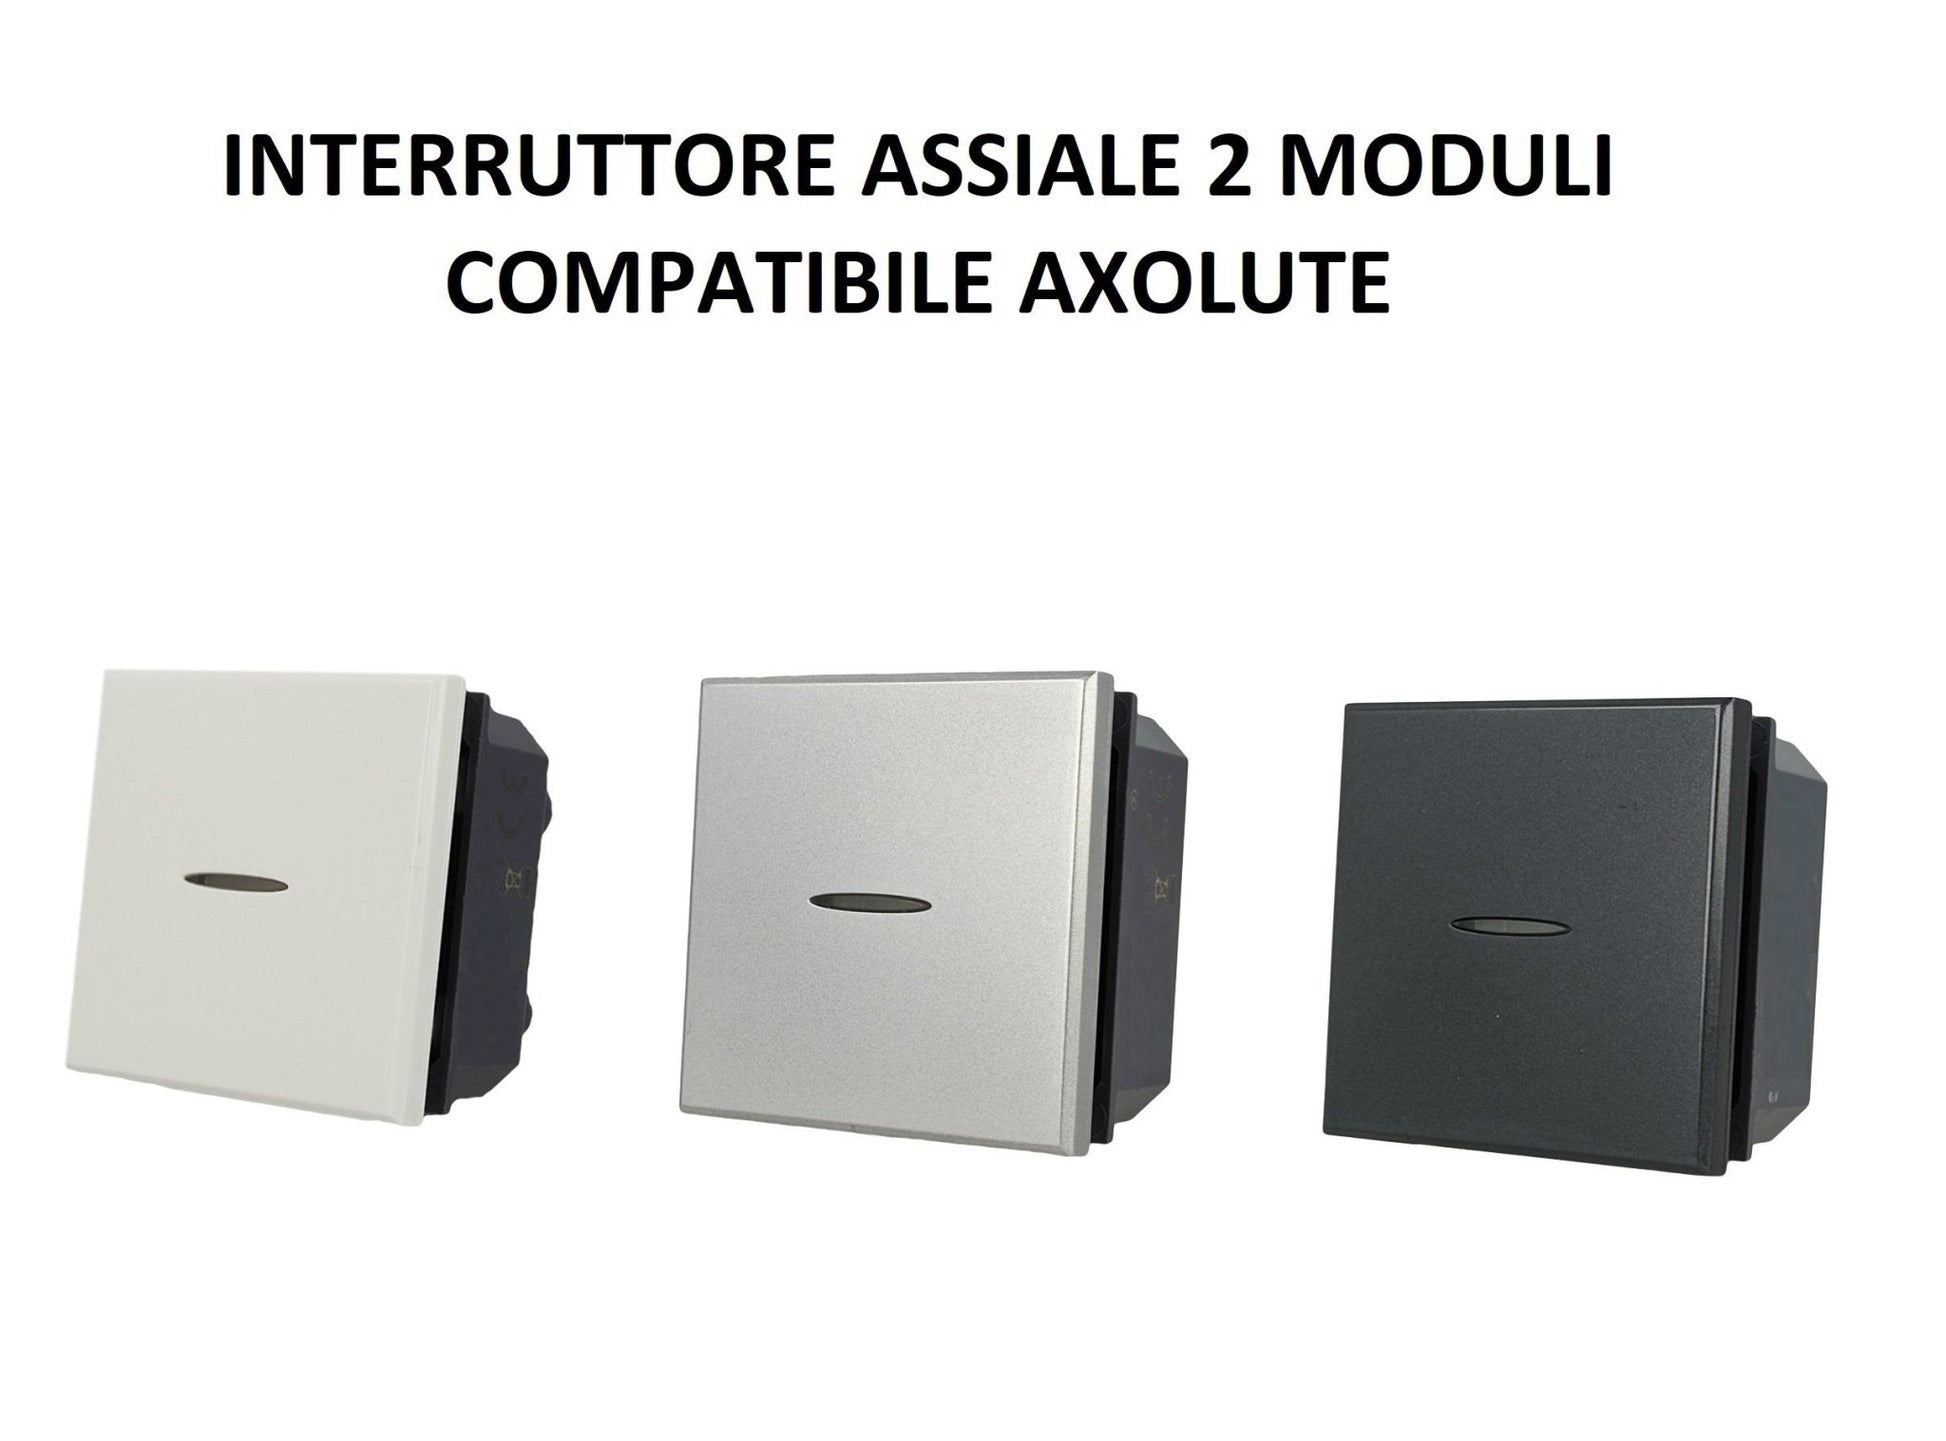 Interruttore Assiale 2M moduli 1P 16A 250V da incasso Bianco Silver Nero compatibile Bticino Axolute - puntoluceled